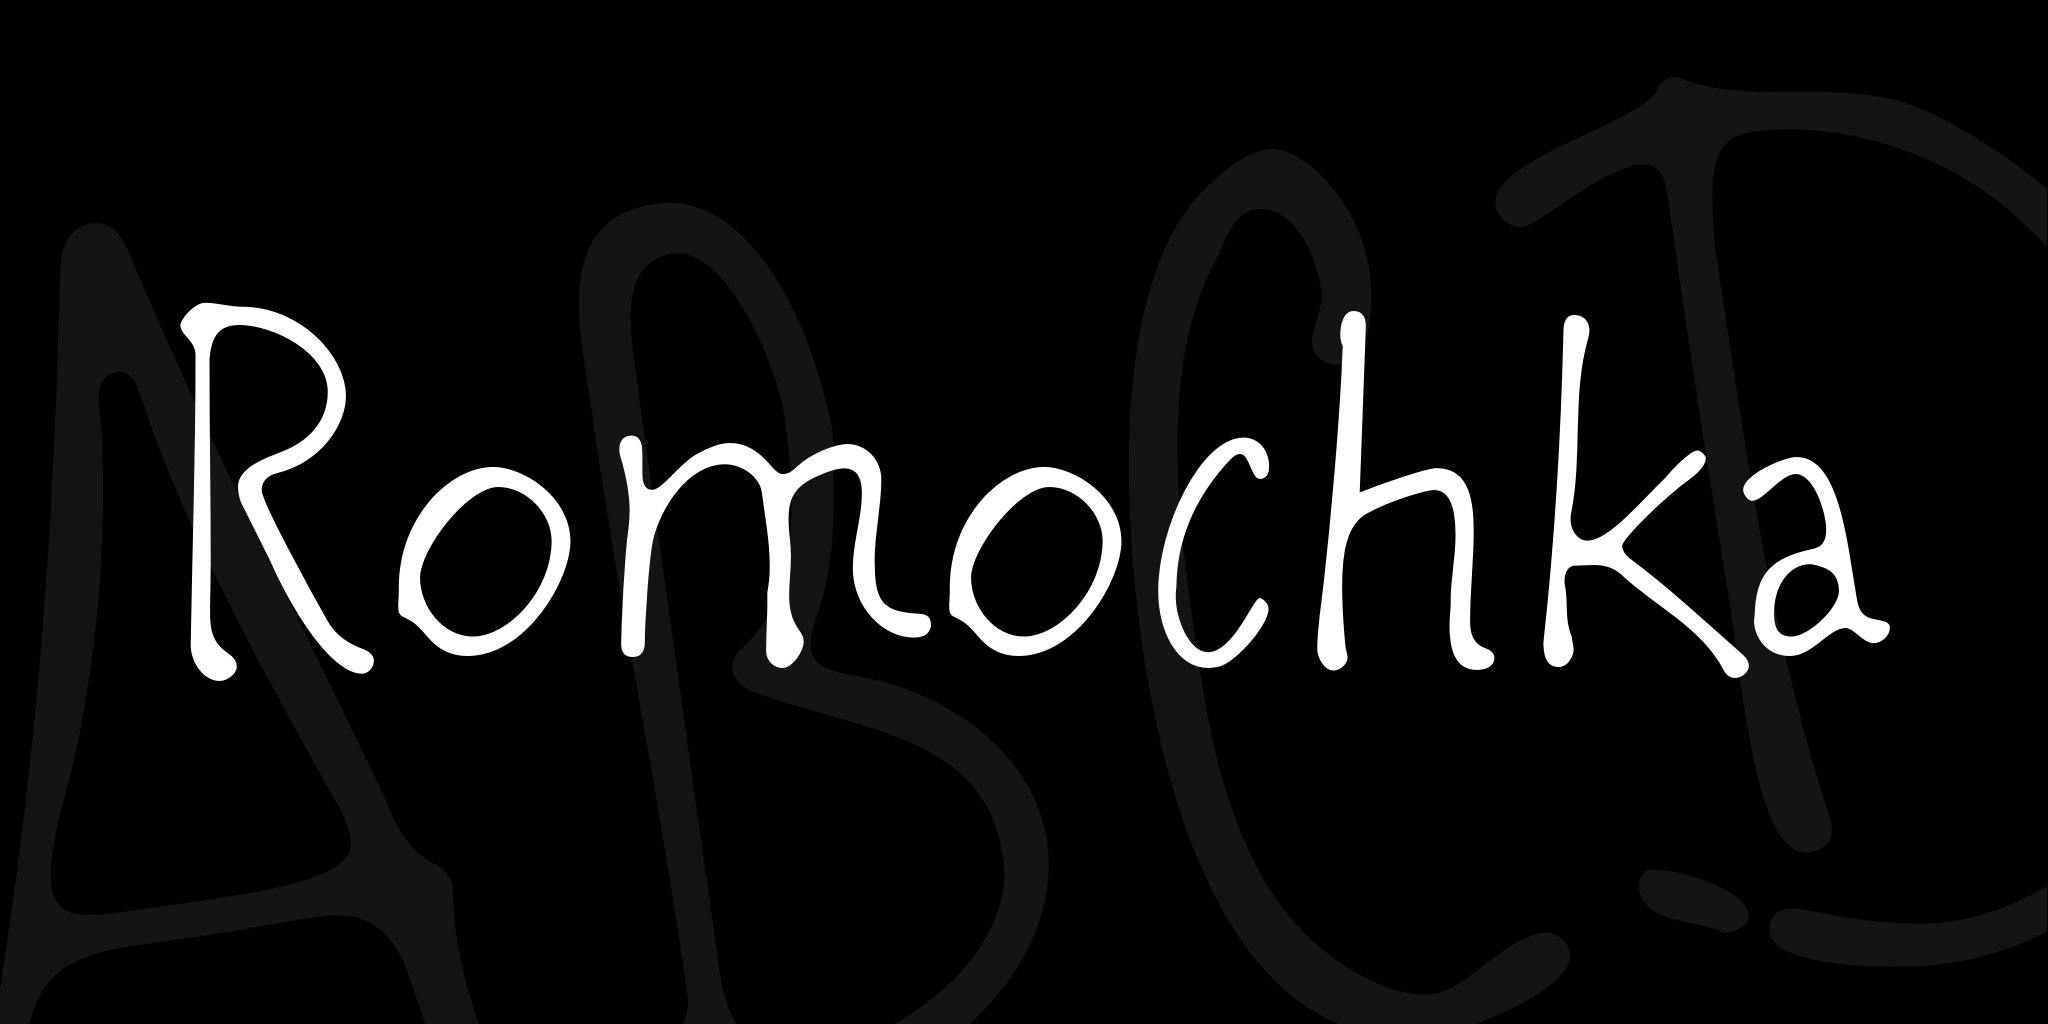 Romochka